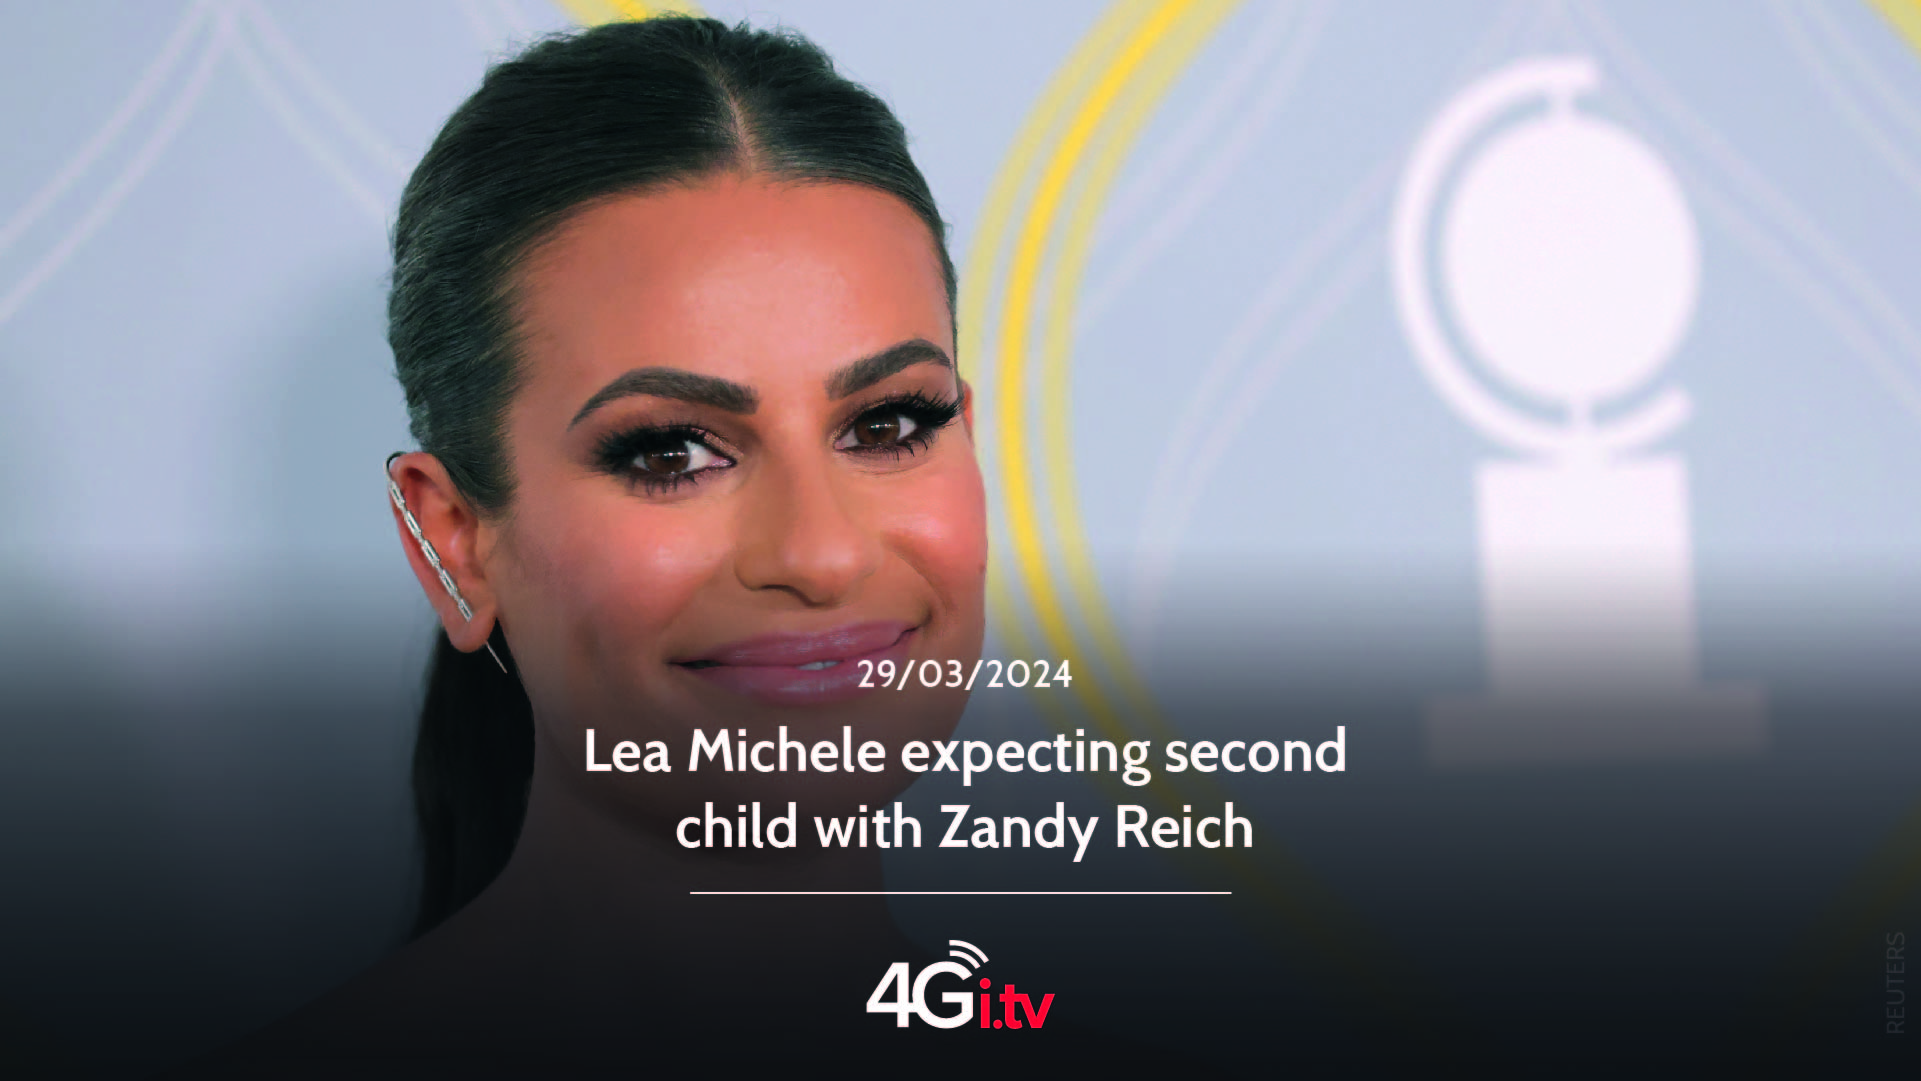 Lesen Sie mehr über den Artikel Lea Michele expecting second child with Zandy Reich